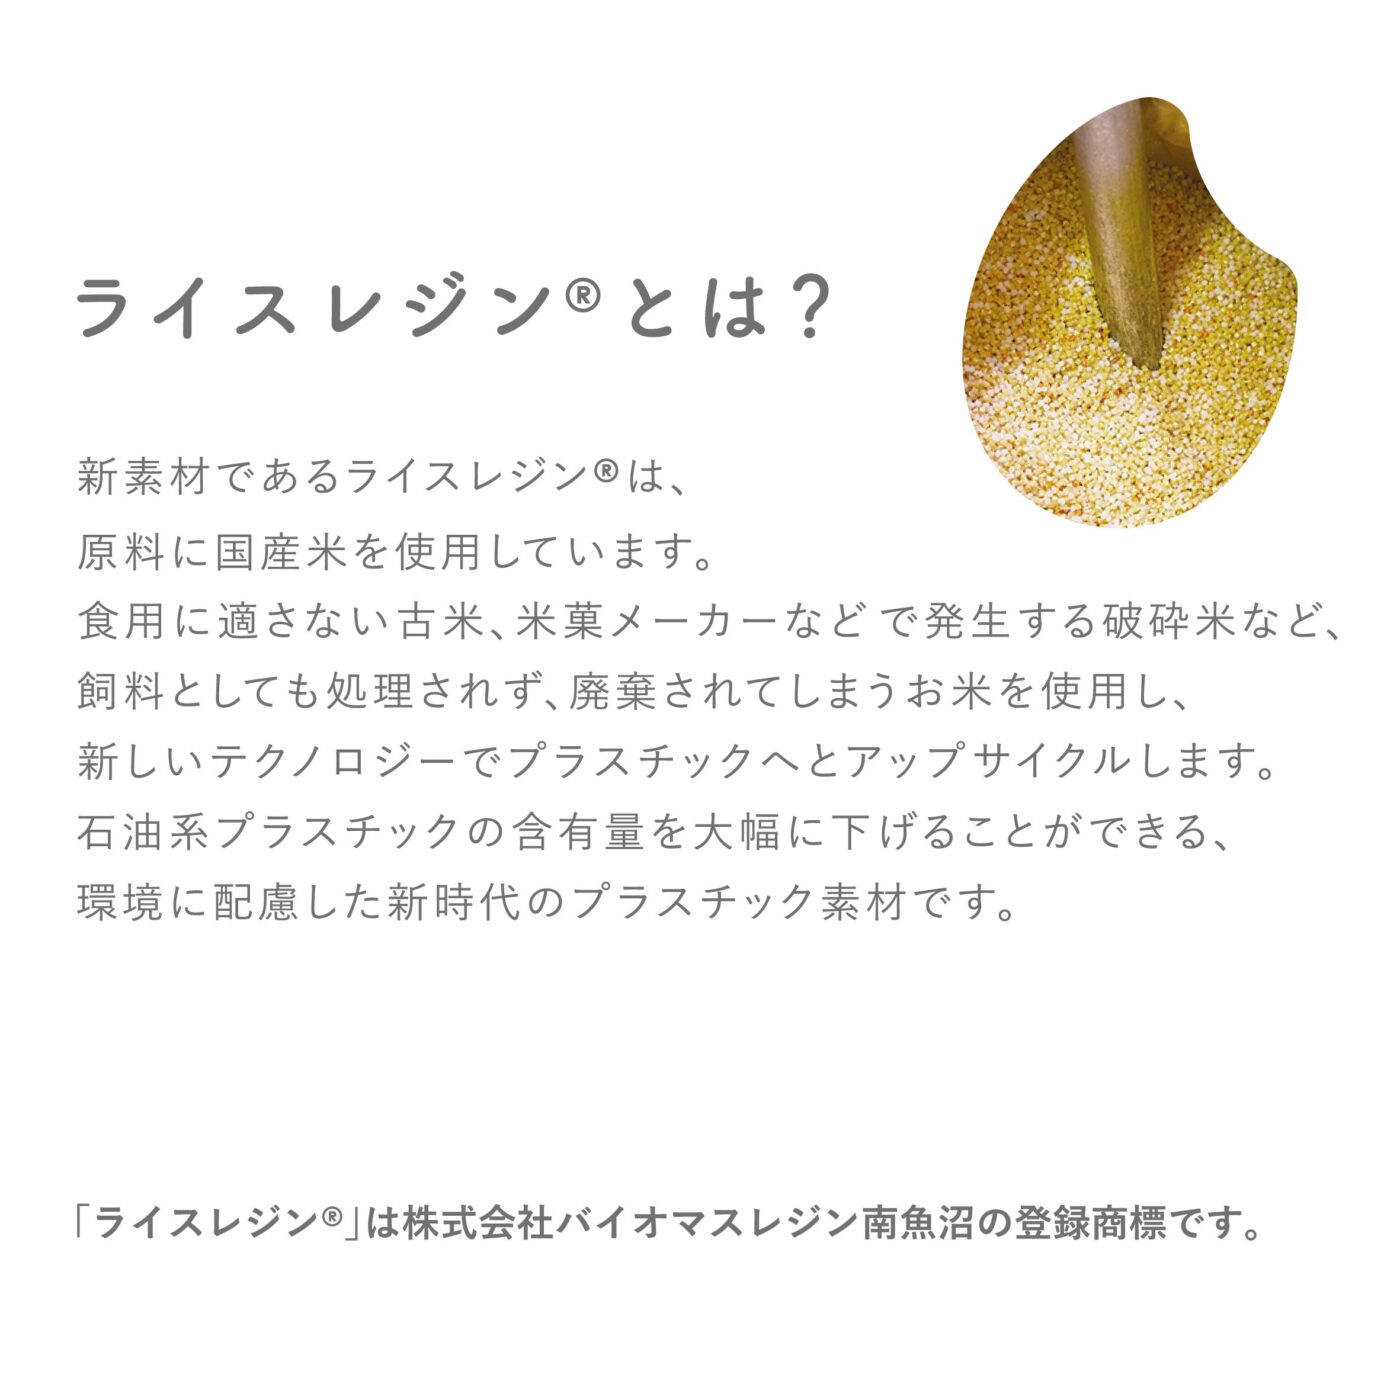 OKOMEIRO S | diablock® | Kawada Official Original Brand Site